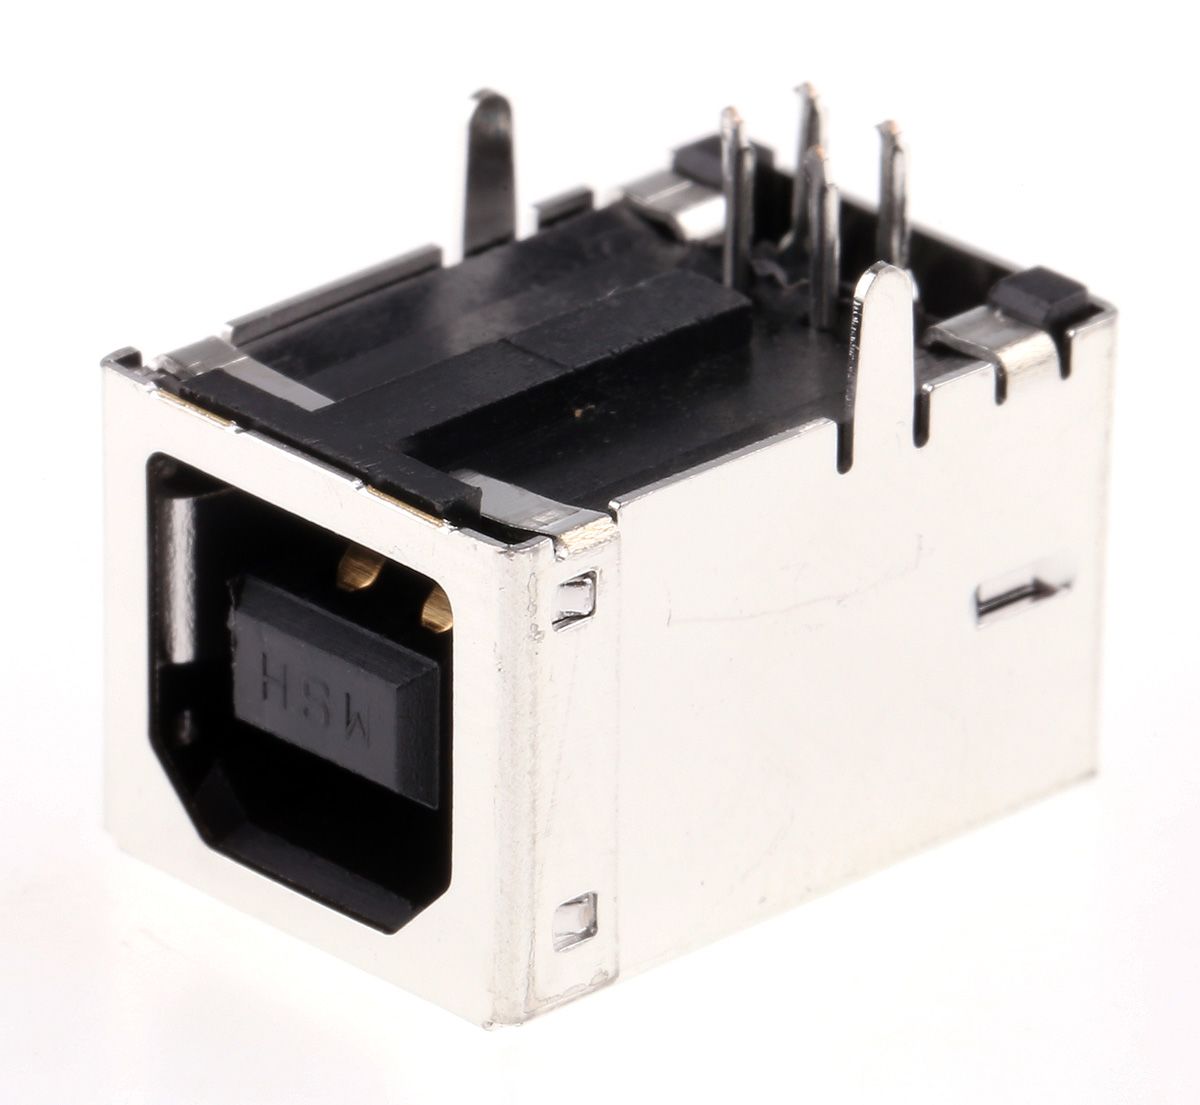 Conector USB Molex 67068-8011, Hembra, , 1 puerto puertos, Ángulo de 90° , Orificio Pasante, 30,0 V., 1.5A